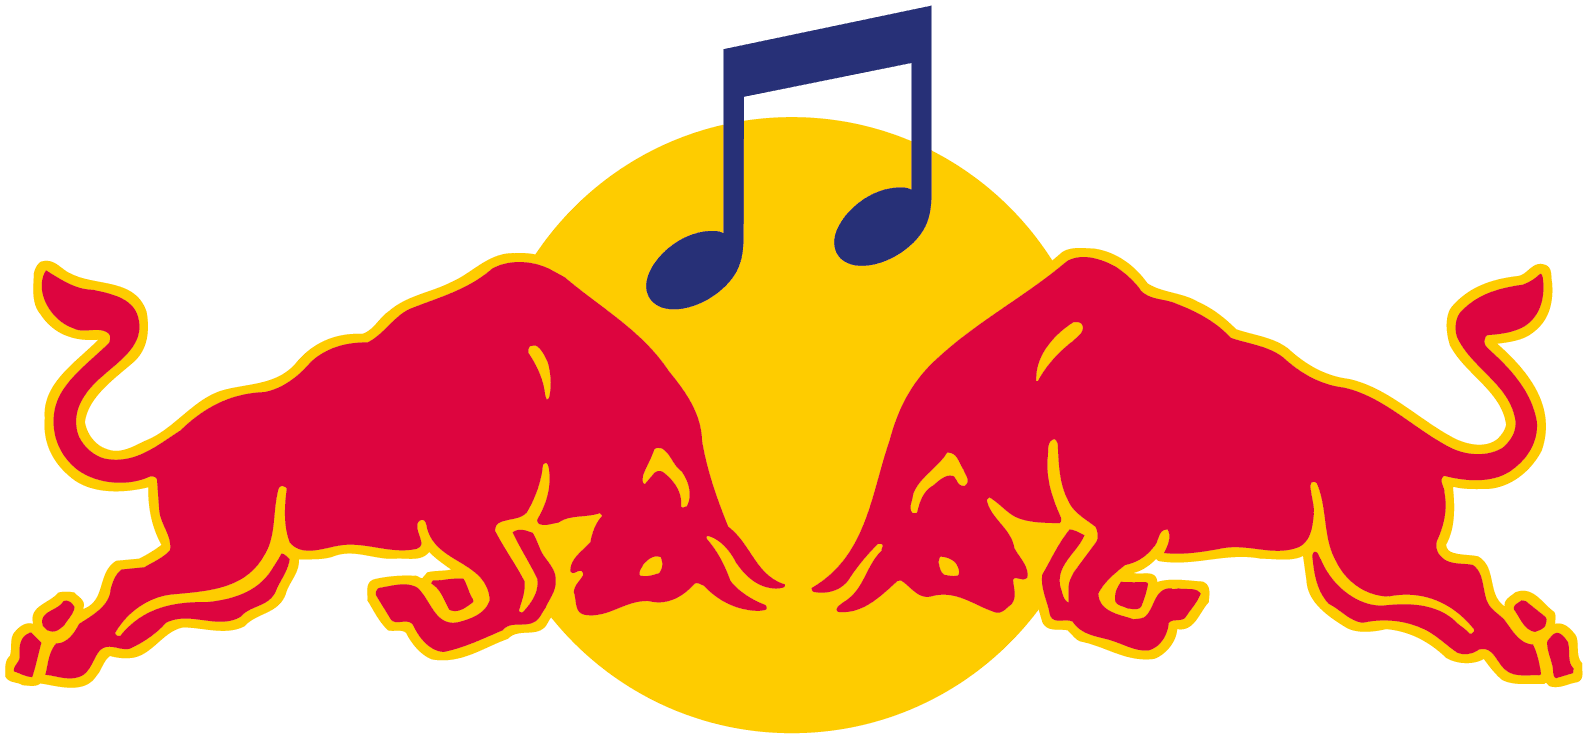 Red Bull Music Logos